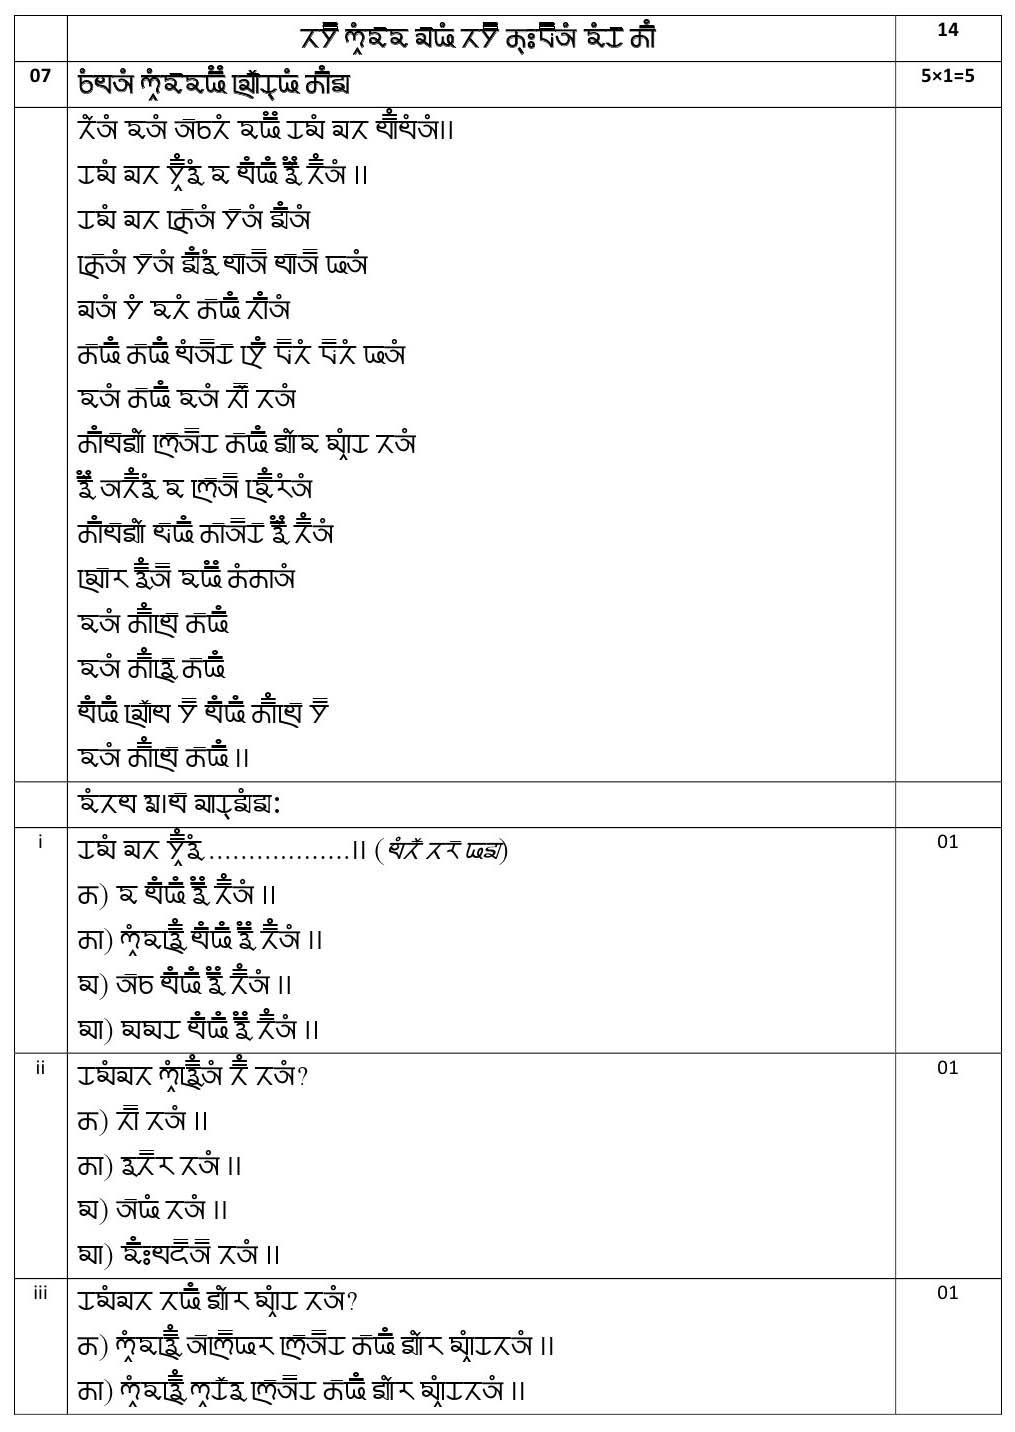 Gurung CBSE Class X Sample Question Paper 2020 21 - Image 10